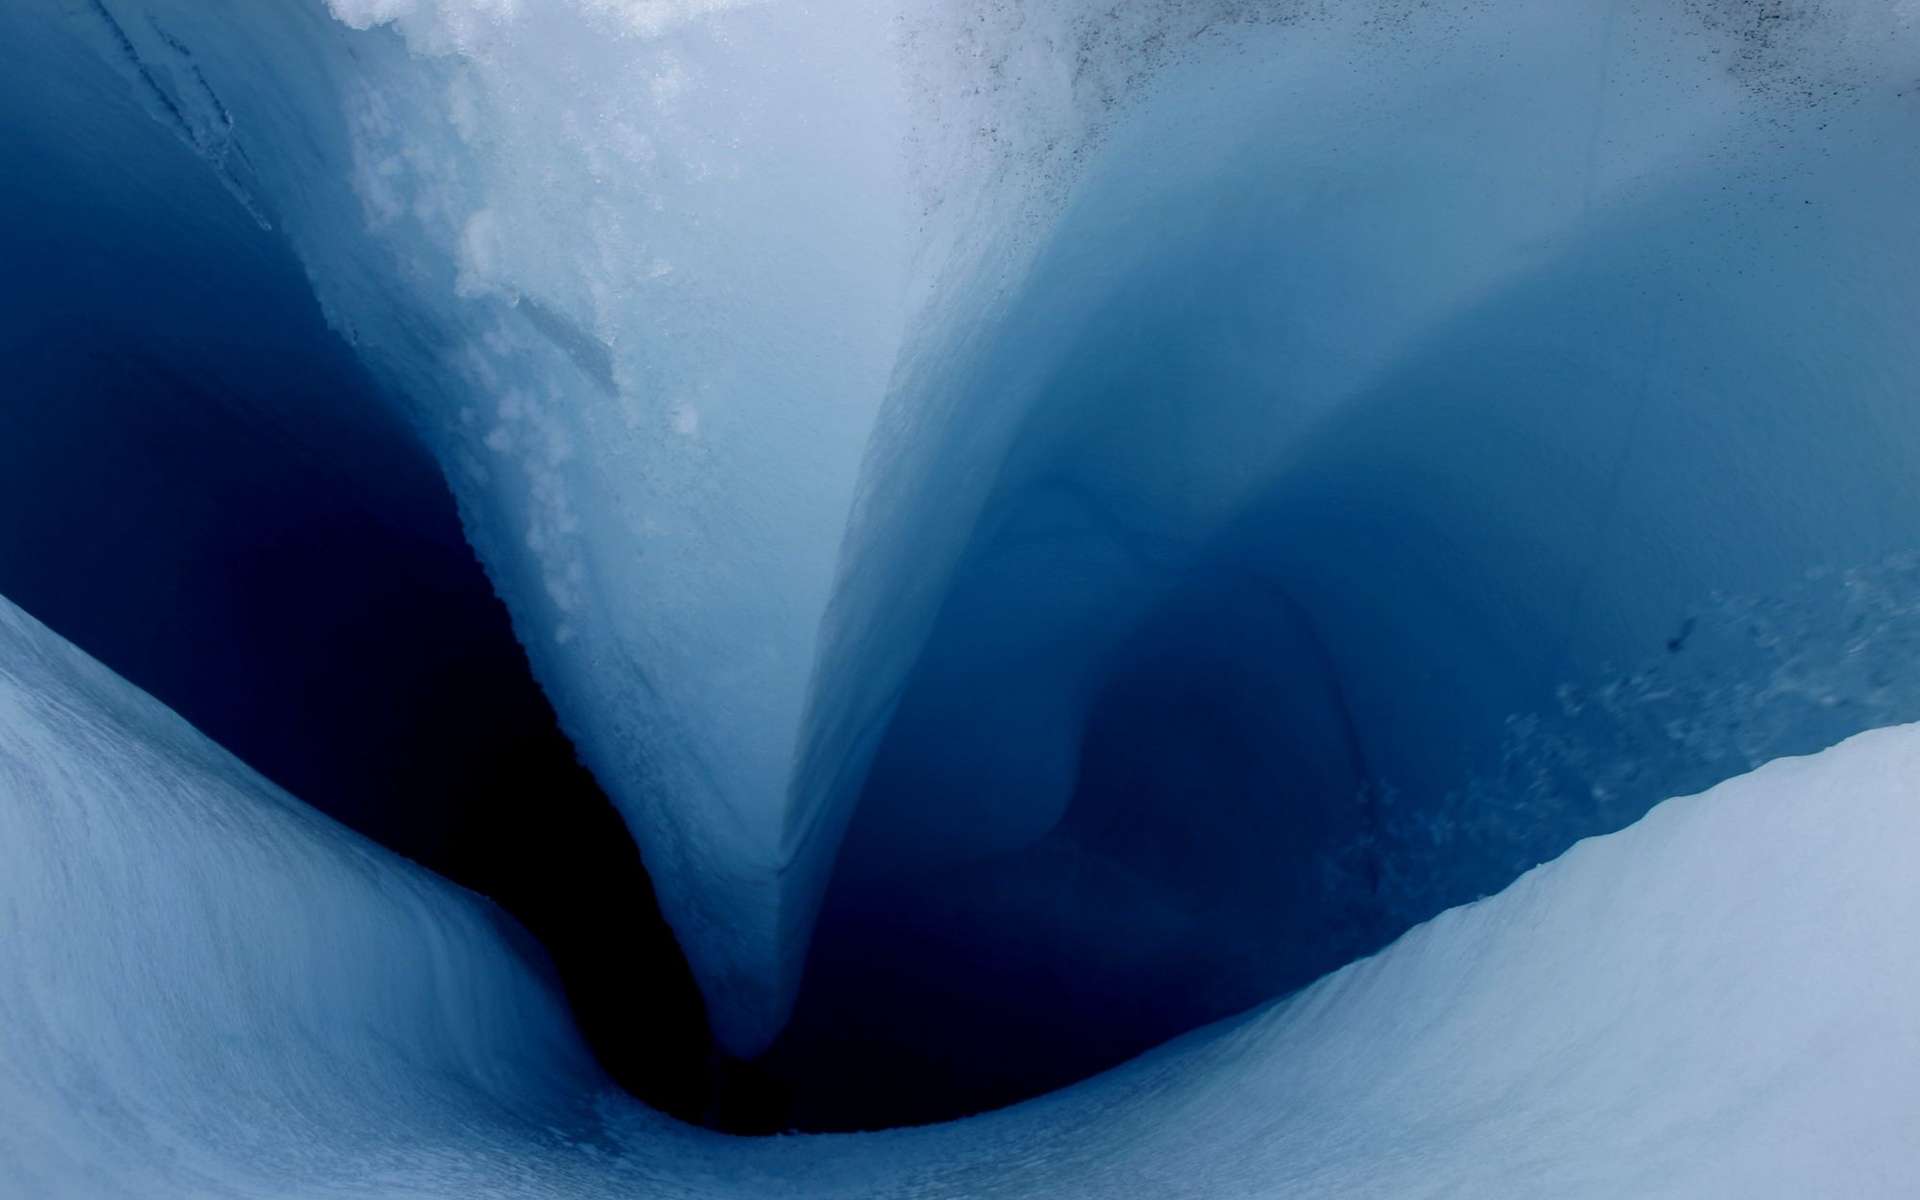 L’eau de fonte provenant de la surface du glacier Sermeq Avannarleq pénètre dans les fissures et atteint la glace interne. L’eau s'écoulant à travers la glace réchauffe probablement la calotte glaciaire de l'intérieur et ramollit la glace, qui se déforme et peut circuler plus vite. L'eau de fonte serait à l'origine de la formation de deux lacs dans la calotte groendlandaise. © William Colgan, Cires